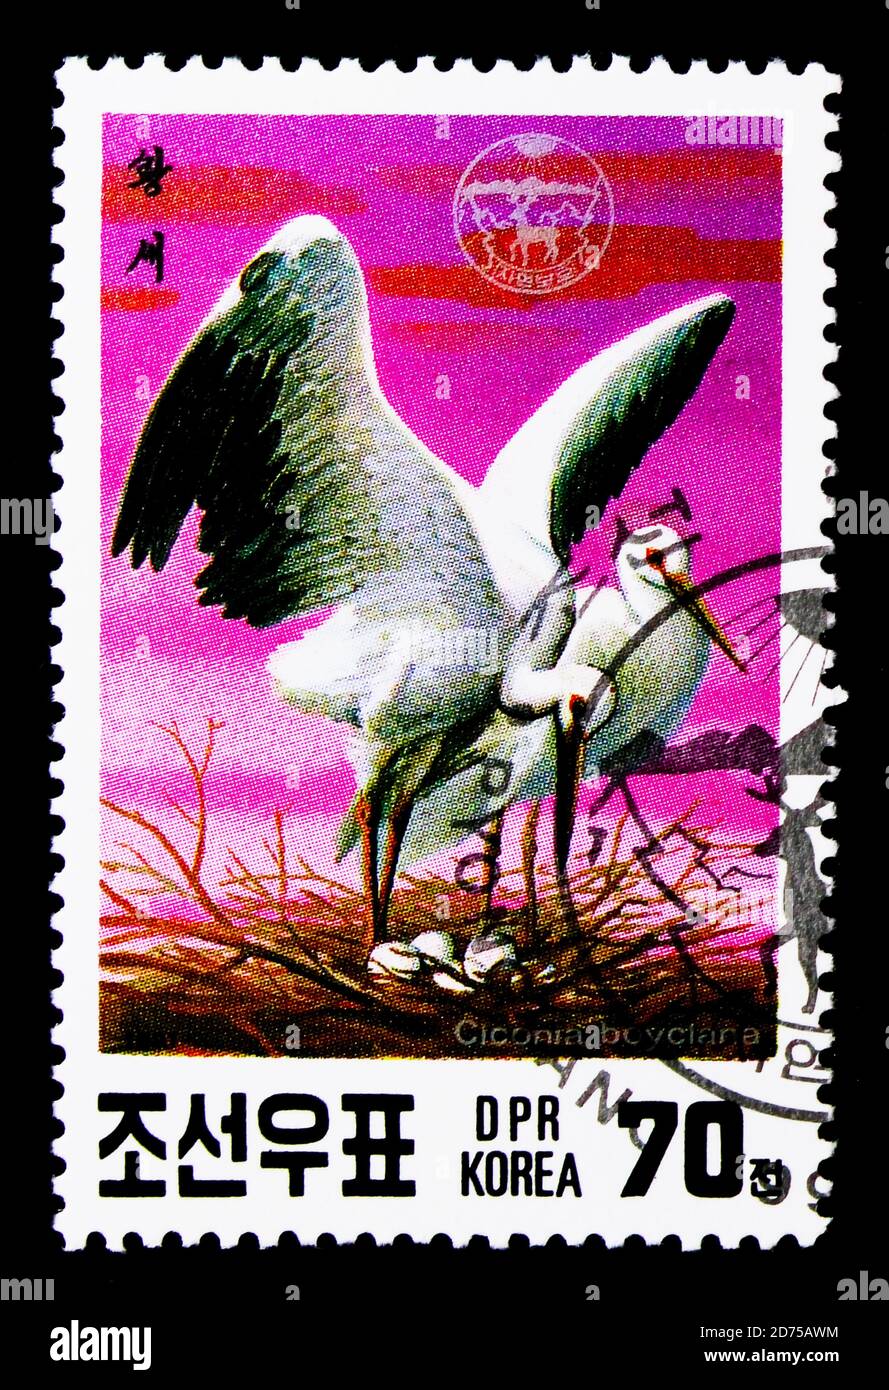 MOSCOU, RUSSIE - 25 NOVEMBRE 2017 : un timbre imprimé en république populaire démocratique de Corée montre le porc blanc oriental (Ciconia ciconia boyciana), en Banque D'Images